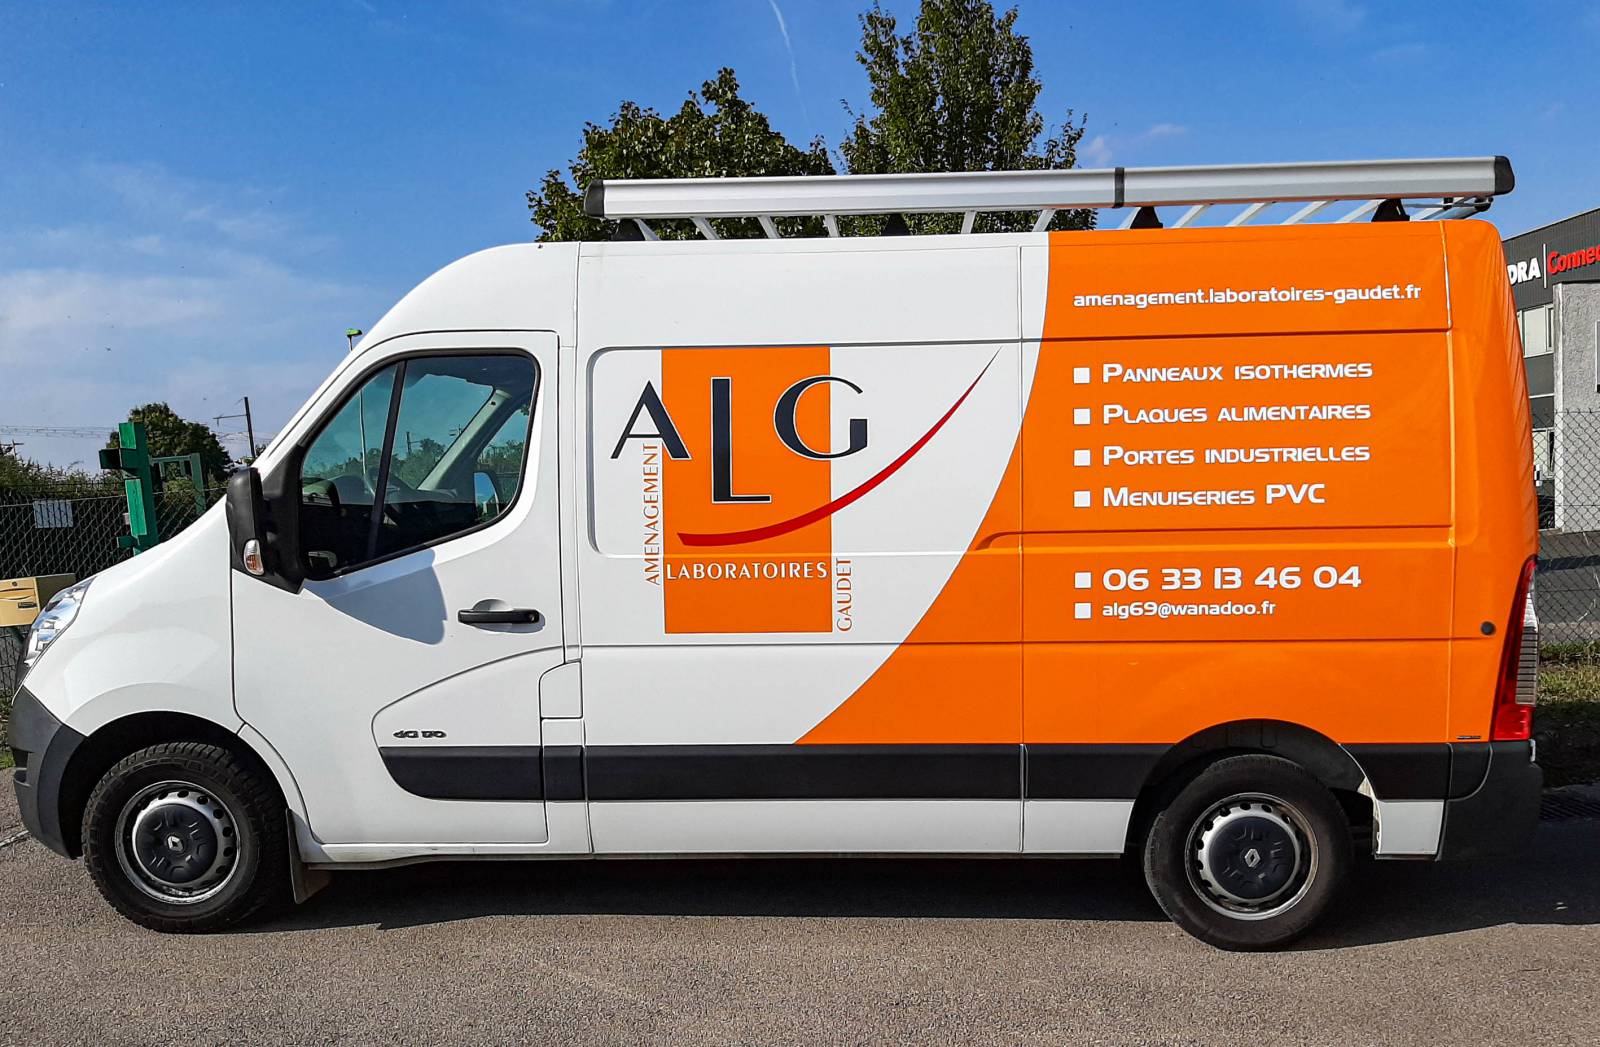 semi-covering professionnel logo sur camion entreprise ALG Zinguerie 